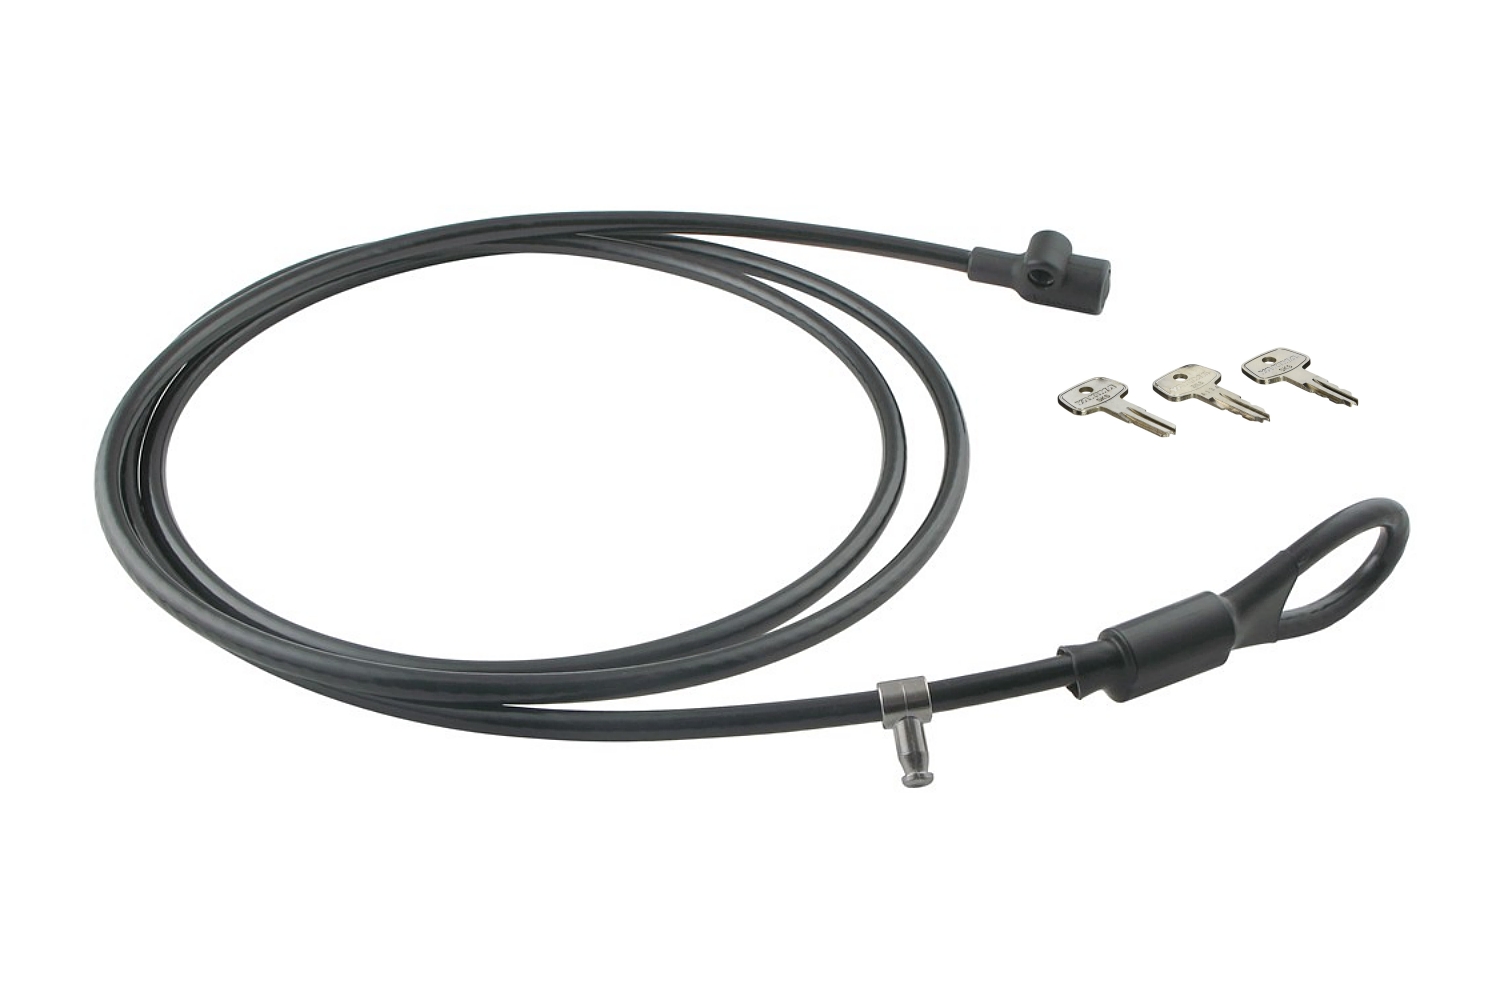 Câble antivol Yakima 9ft Security Cable + serrure LockCore